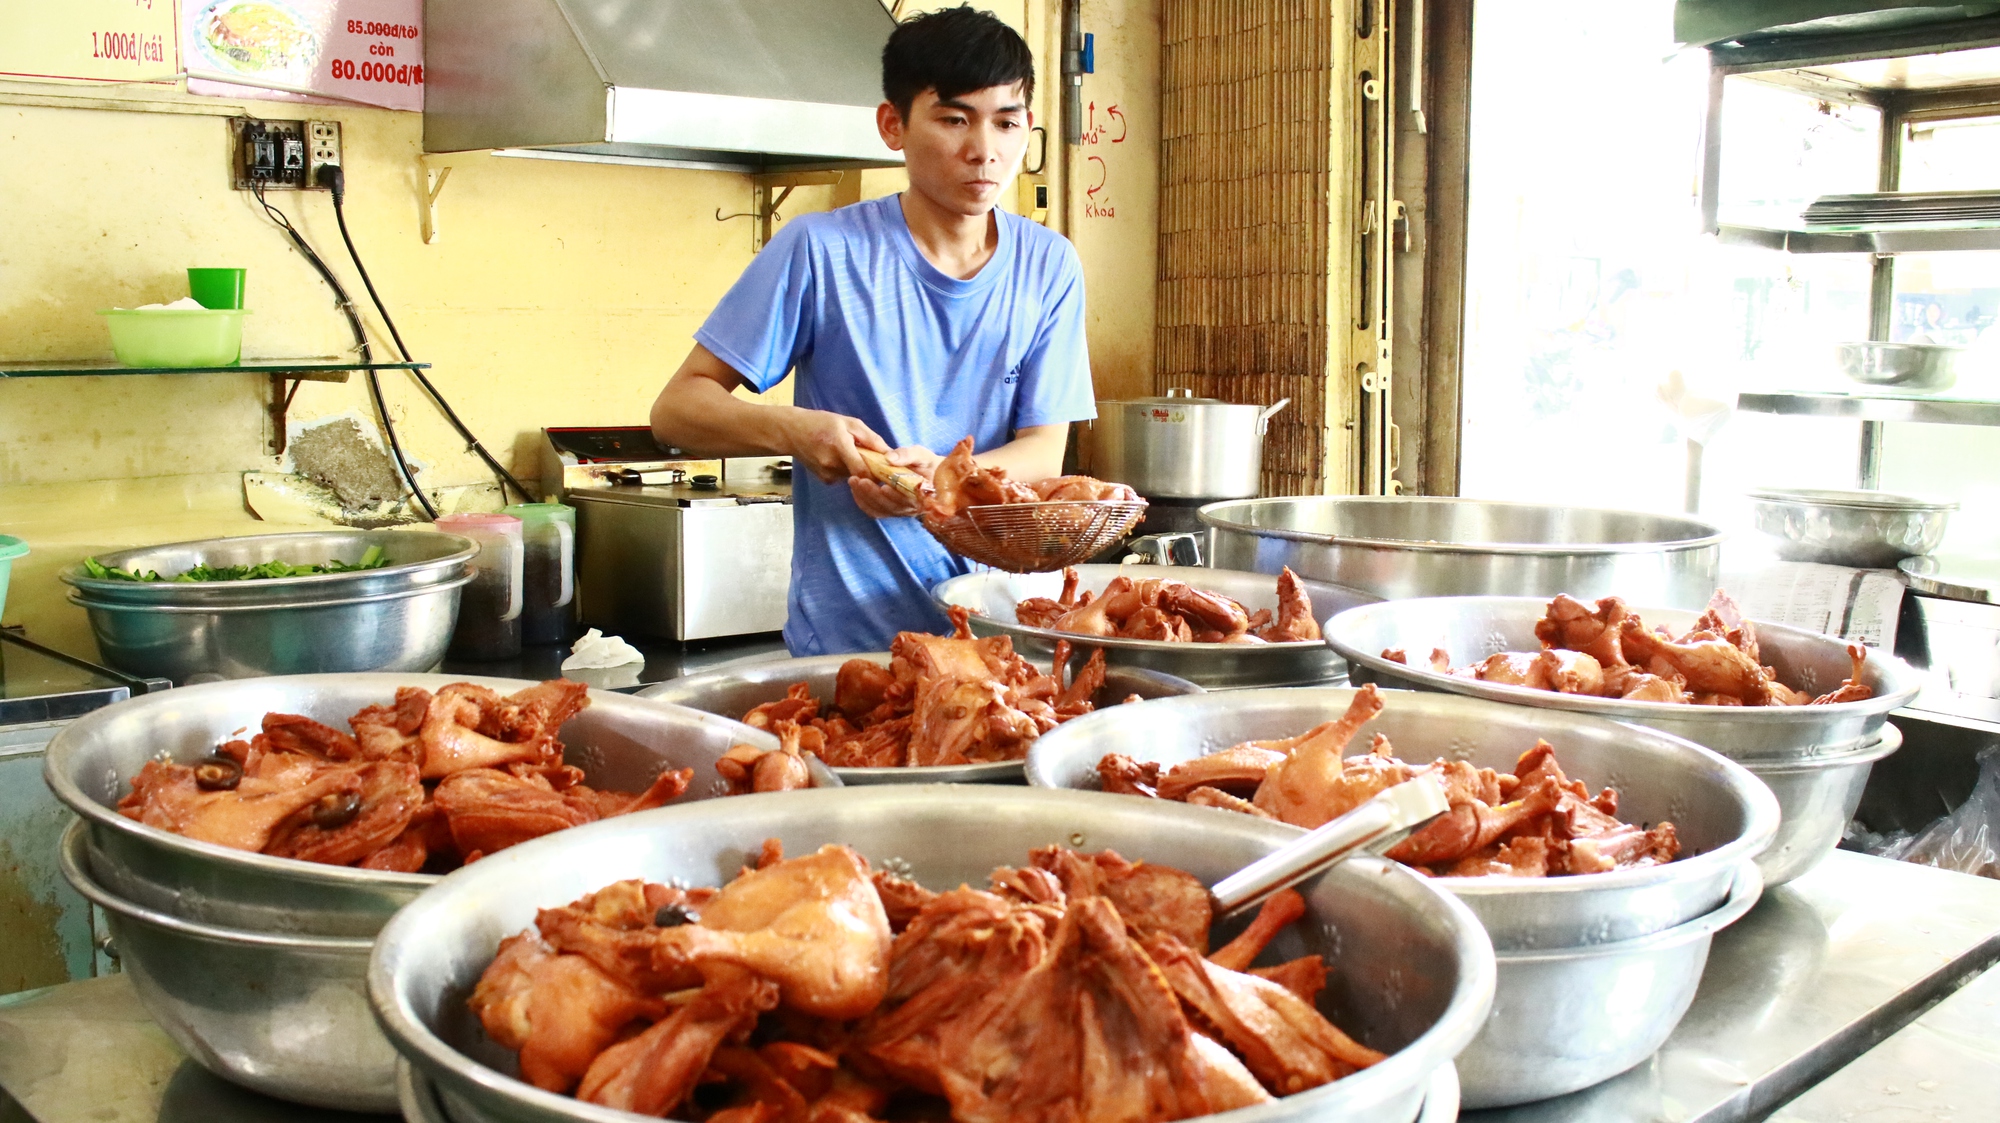 Quán mì vịt tiềm Thượng Hải luôn chuẩn bị 6 thau vịt mỗi ngày để đón lượng khách lớn đến quán